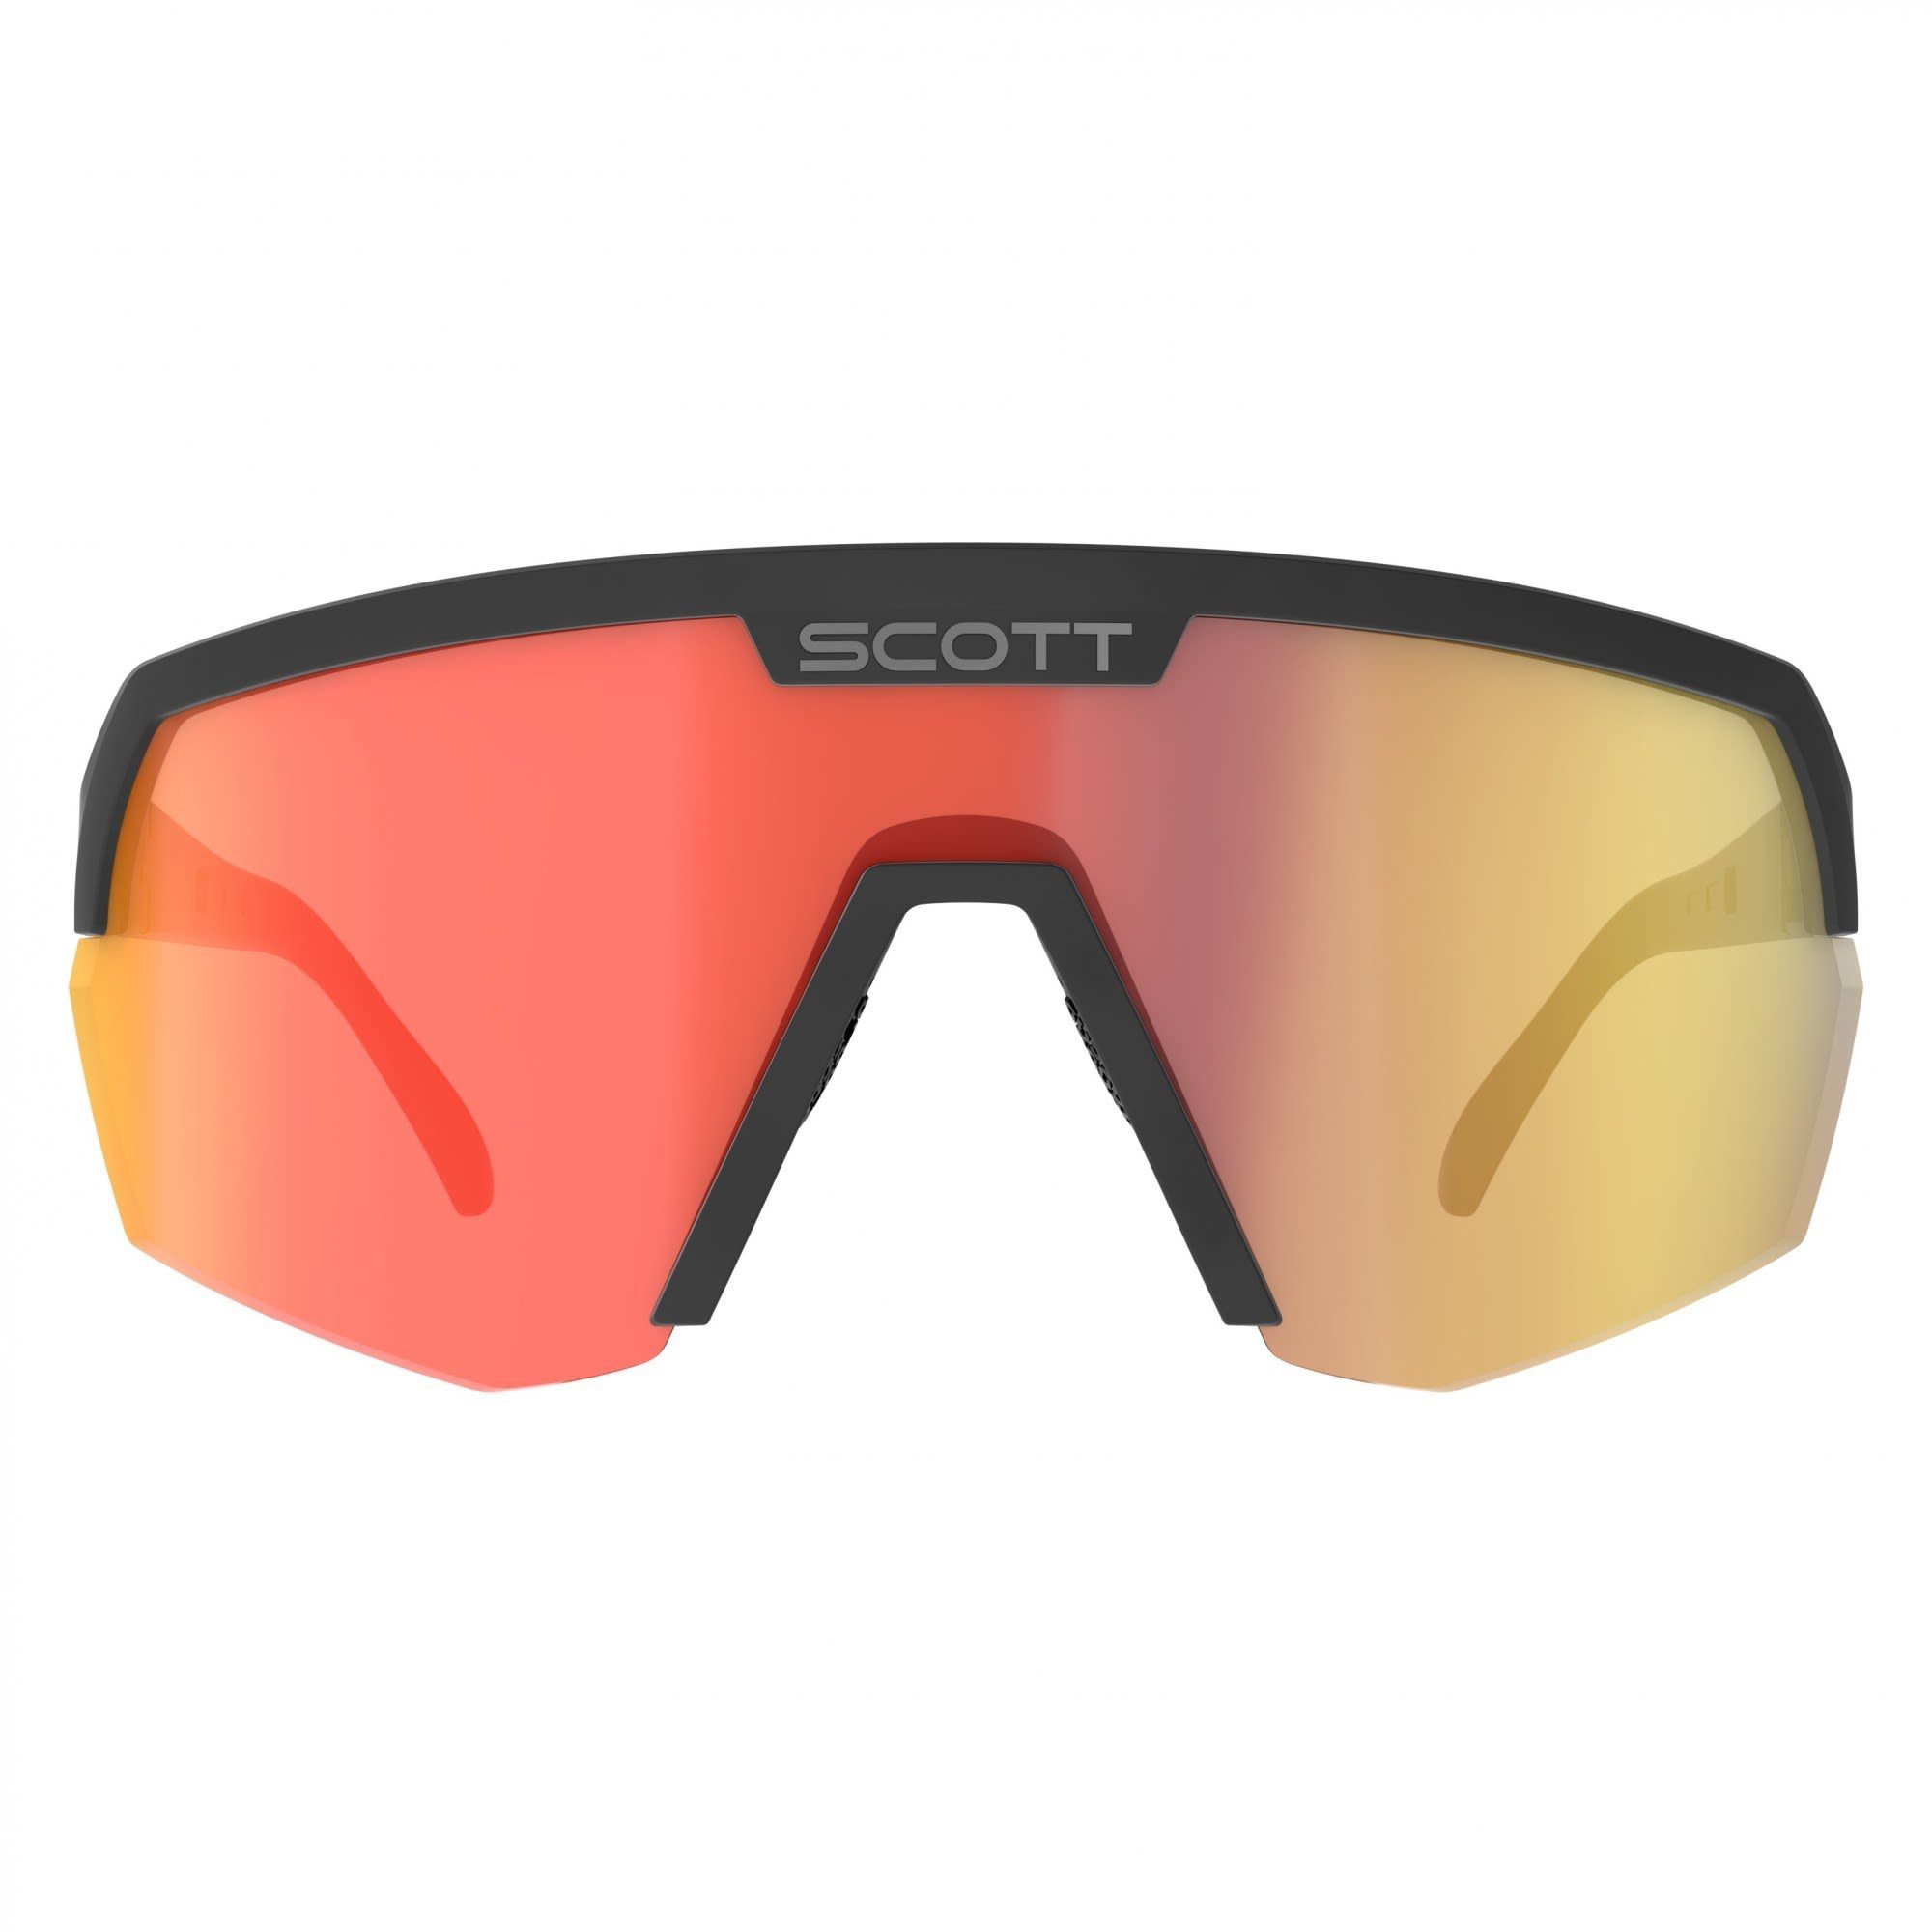 Sport Shield Sunglasses Scott - Scott Black Red Chrome Fahrradbrille Accessoires